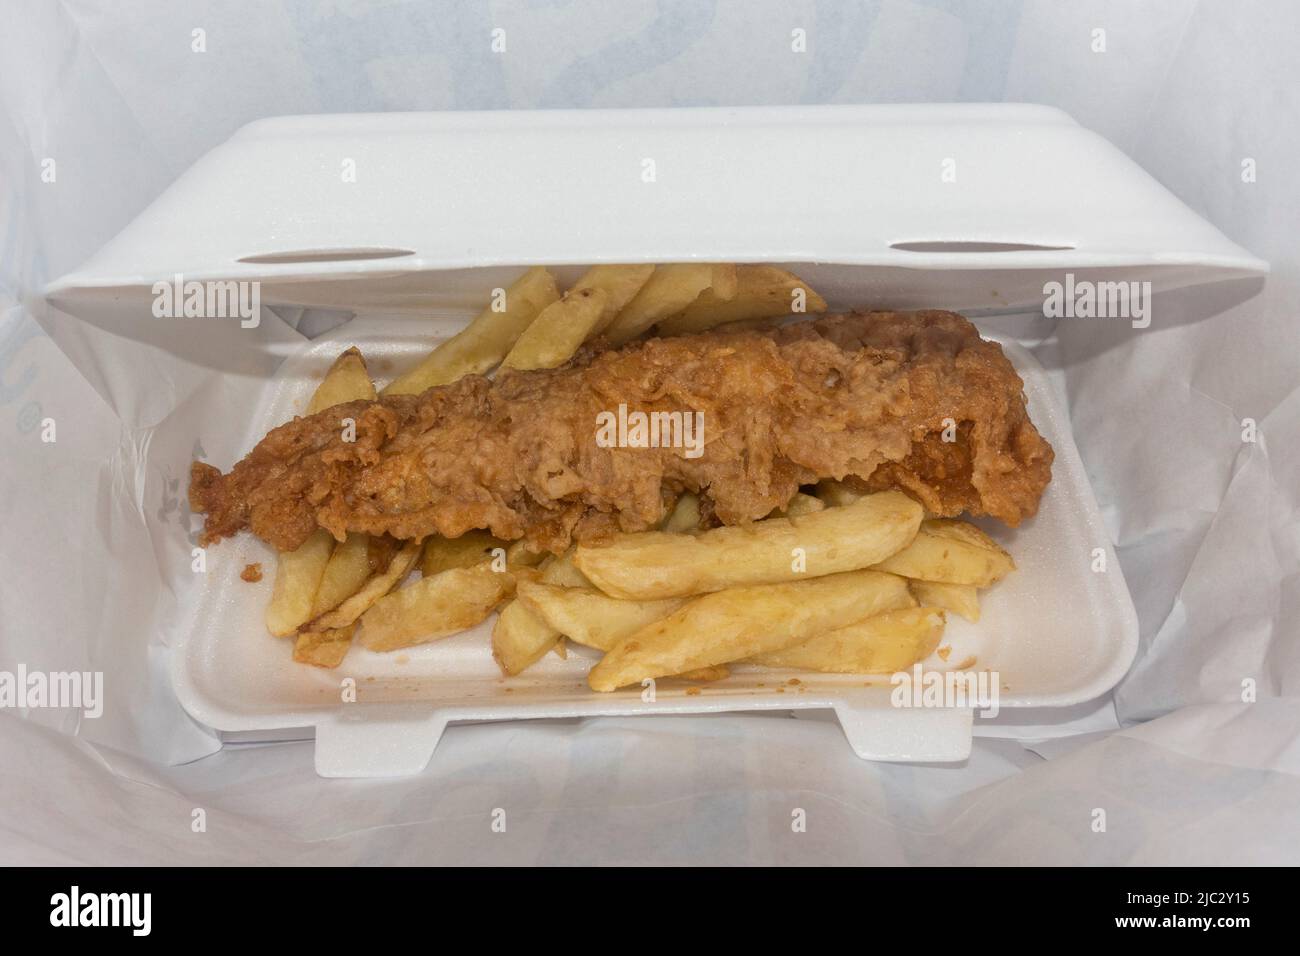 Pescado y patatas fritas (bacalao) en una caja de poliestireno (Skipton, North Yorkshire, Reino Unido). Foto de stock